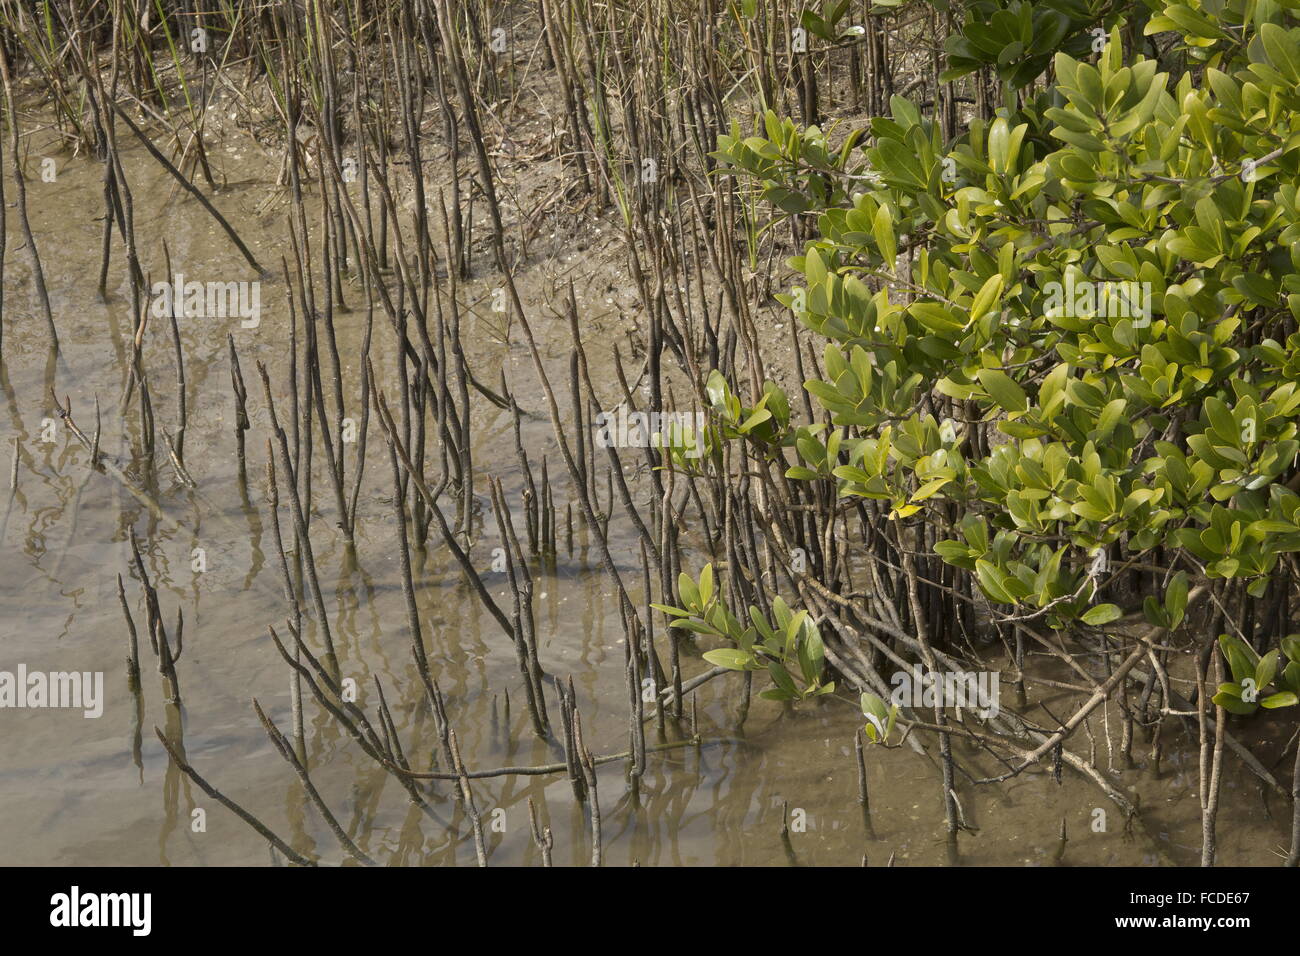 Mangrove noire, Avicennia germinans sur saltmarsh edge avec pneumatophores (racines d'aération), au Texas. Banque D'Images